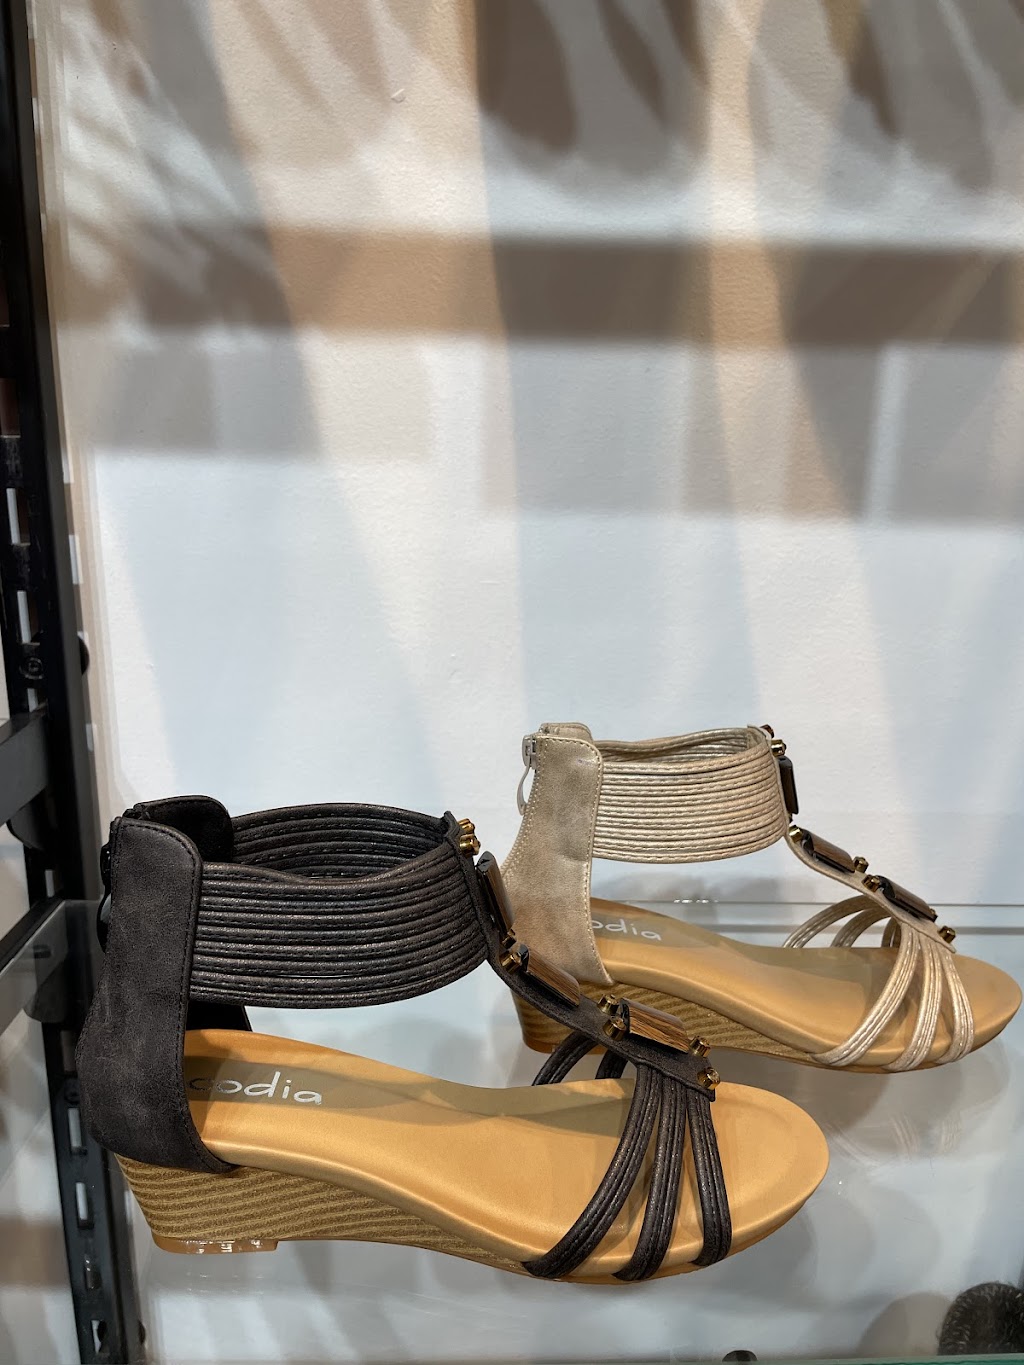 Chaussures Galli | 7077 Bd Newman, LaSalle, QC H8N 1X1, Canada | Phone: (514) 368-5097